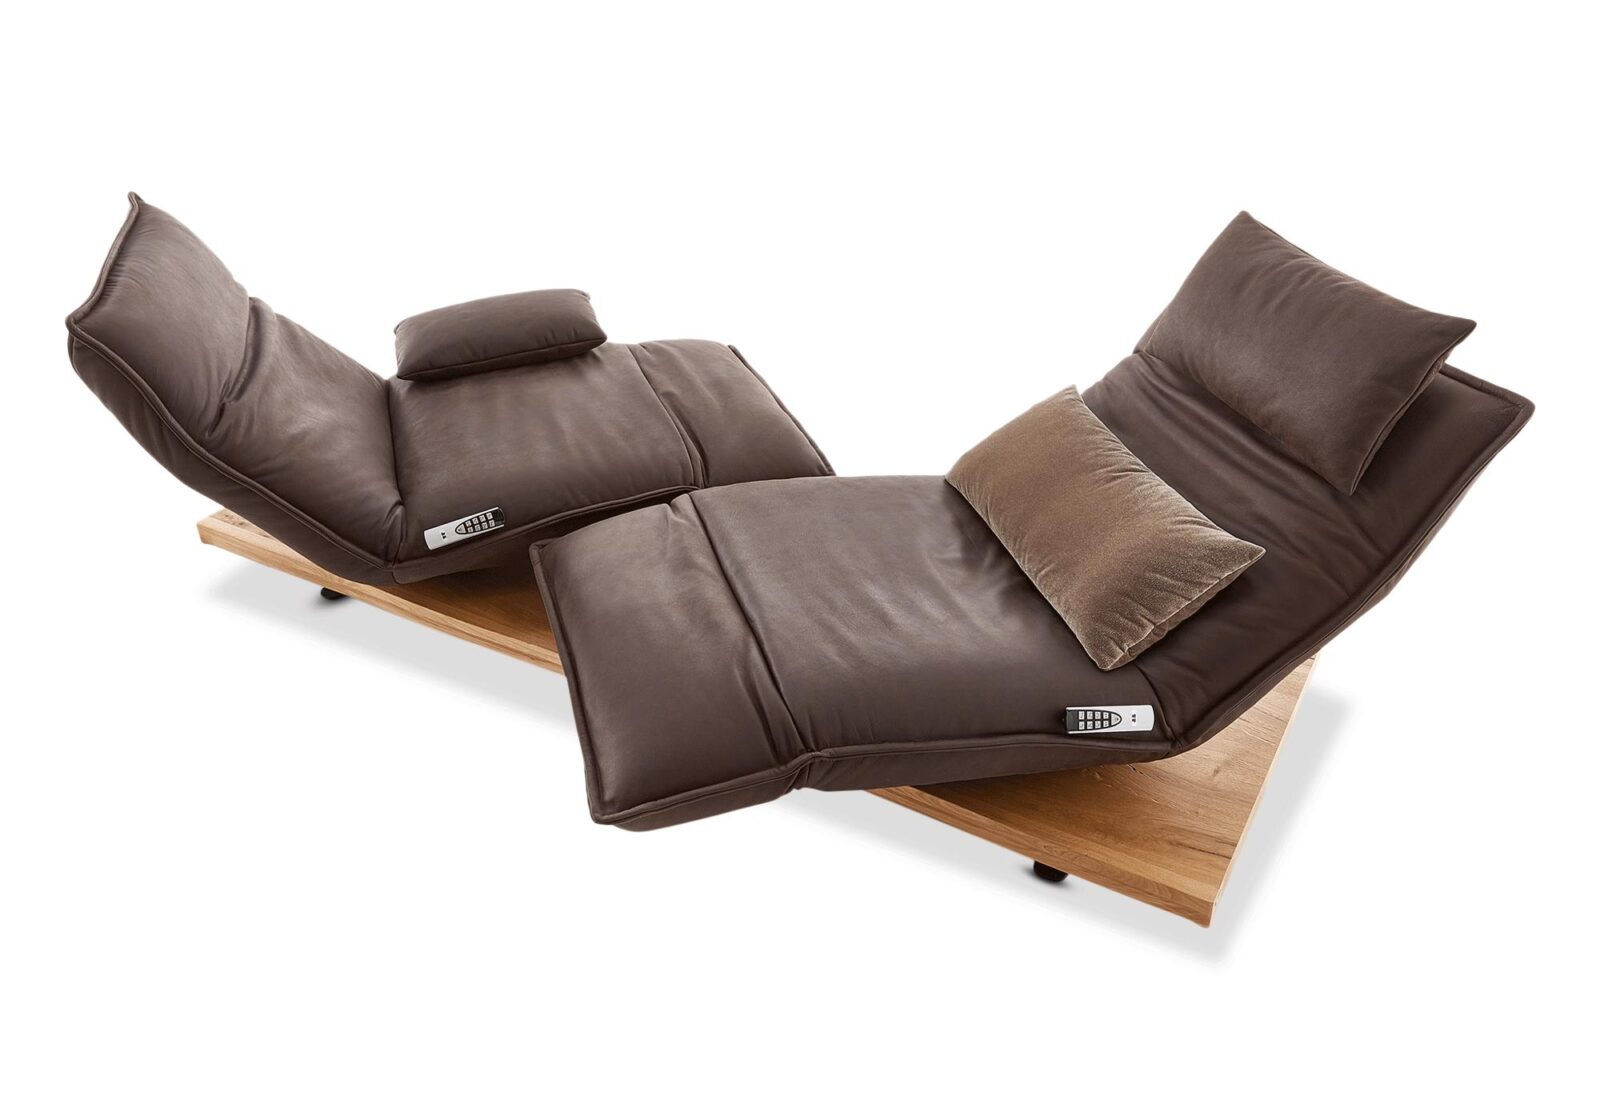 2er Relaxsofa Epos mit Sitzverstellung. Bezug: Leder. Farbe: Mud. Erhältlich bei Möbel Gallati.